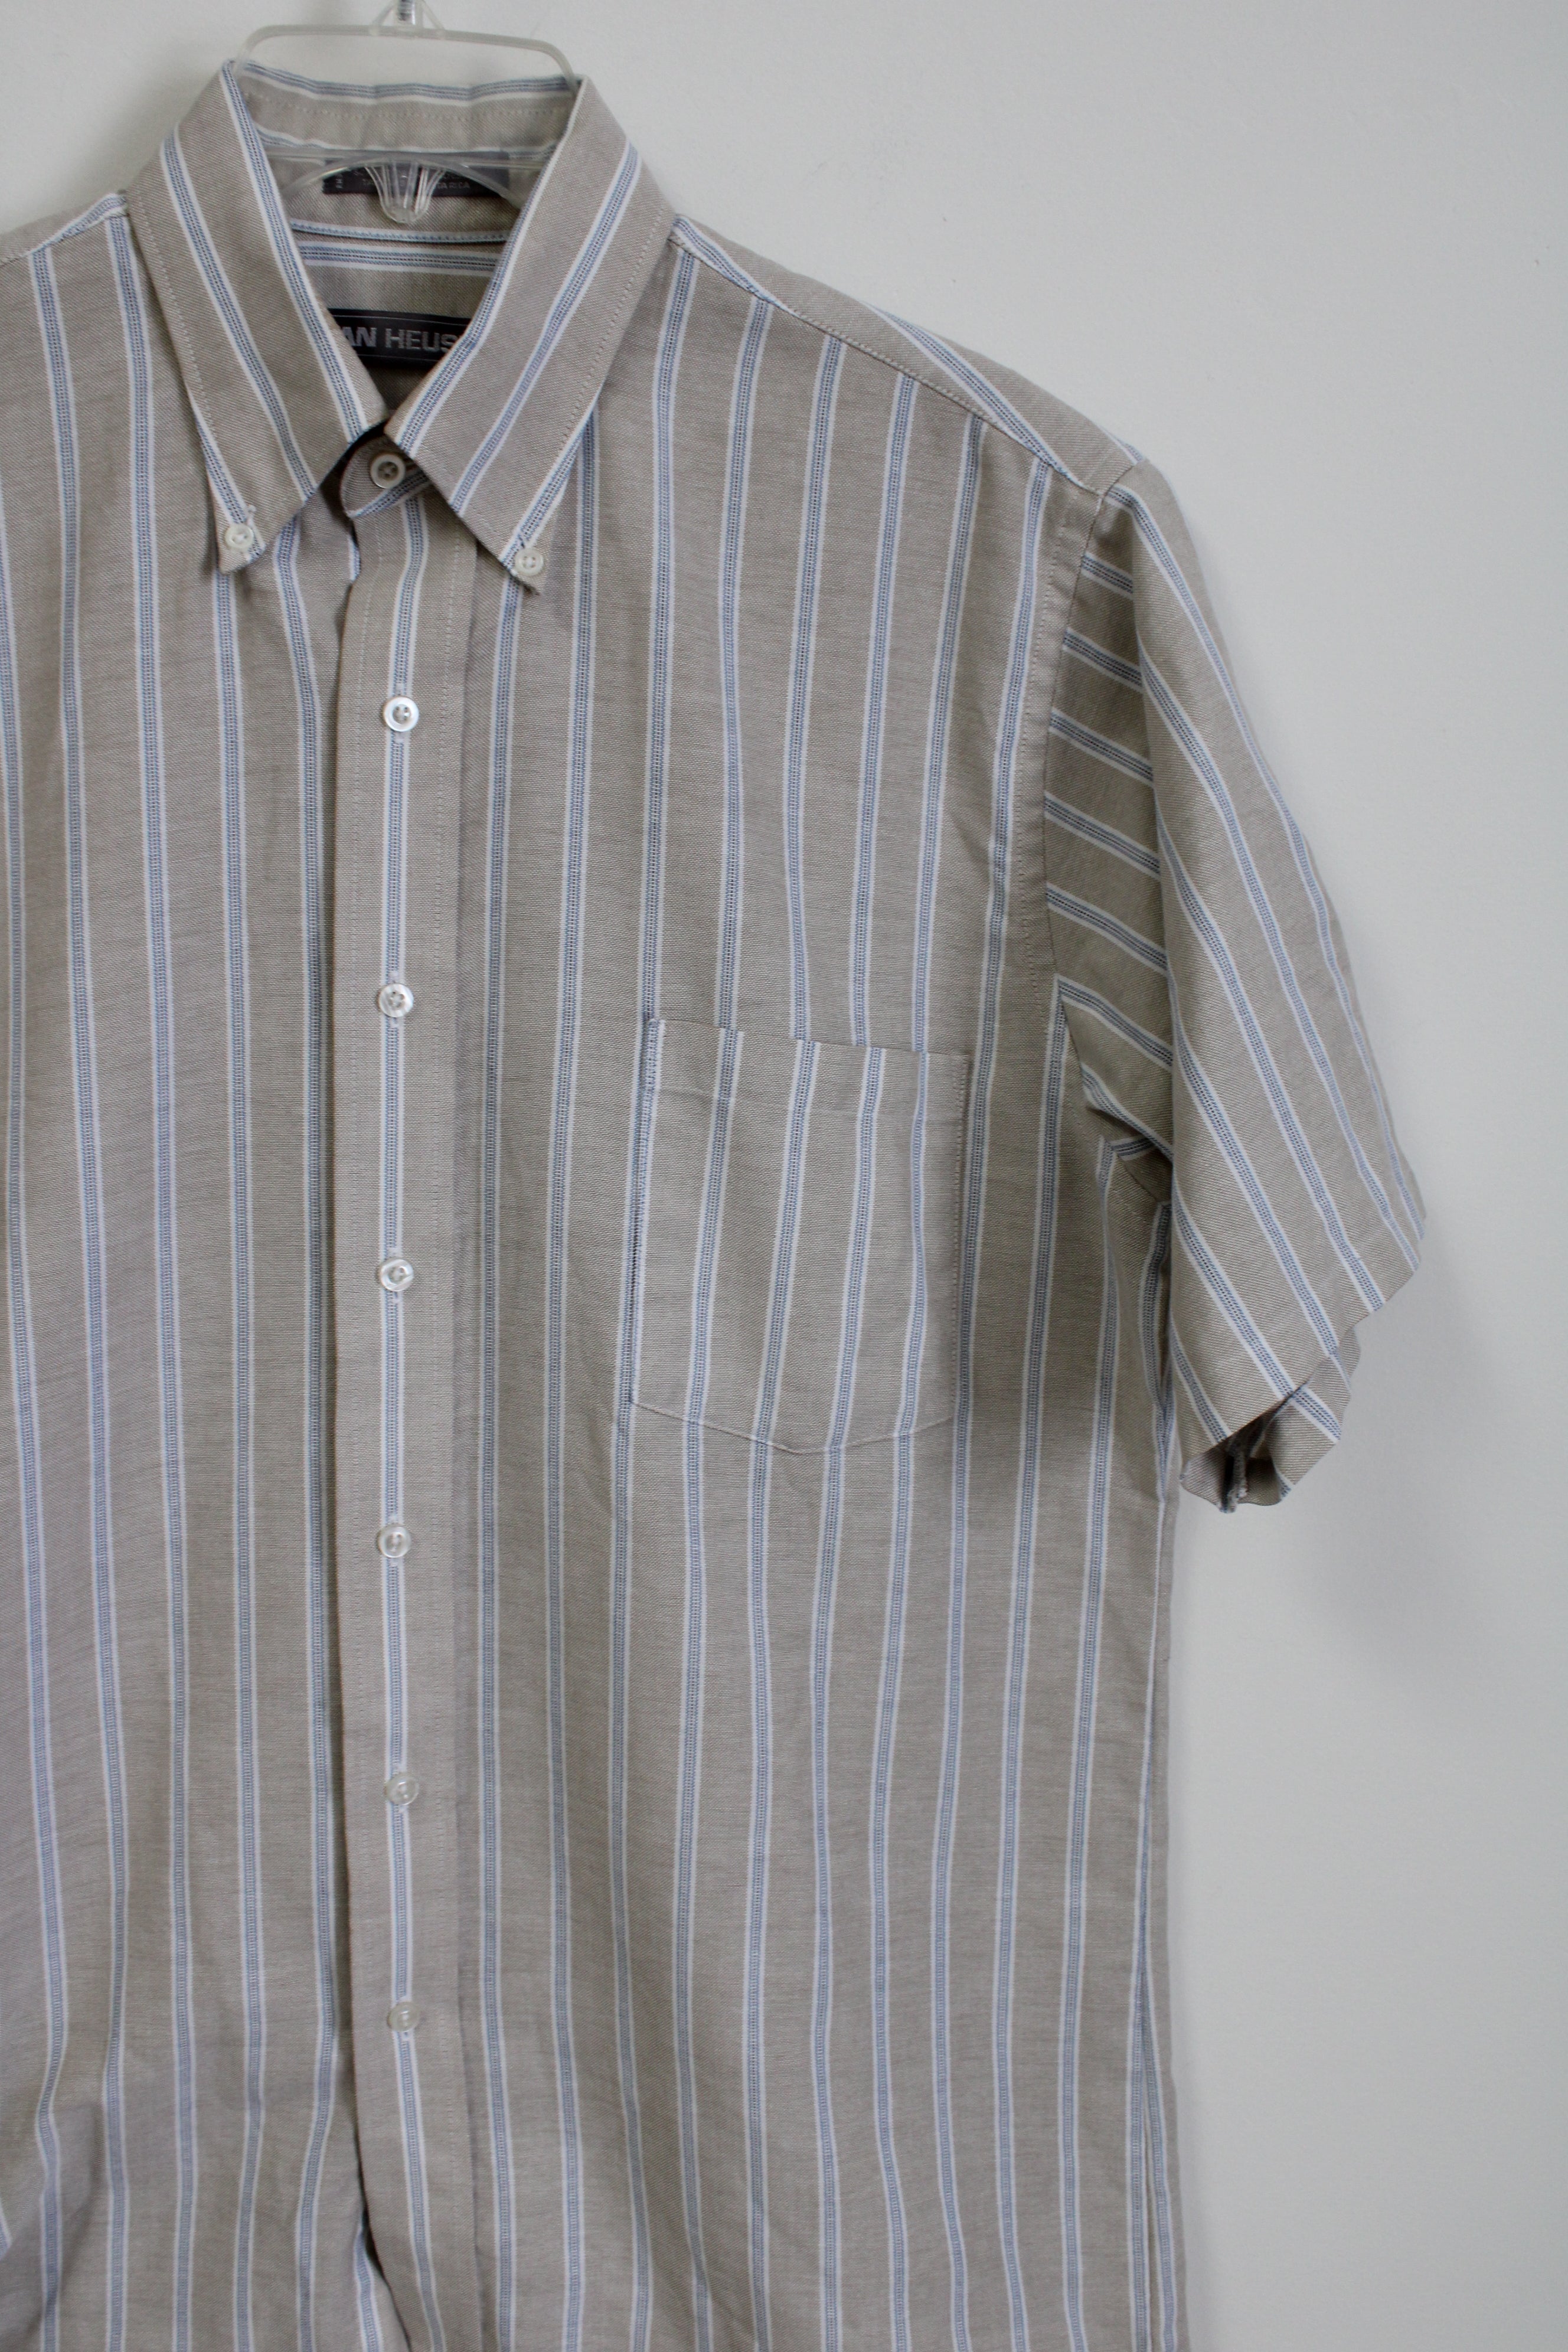 Van Heusen Tan Blue Striped Short Sleeved Button Down Shirt | 15 1/2